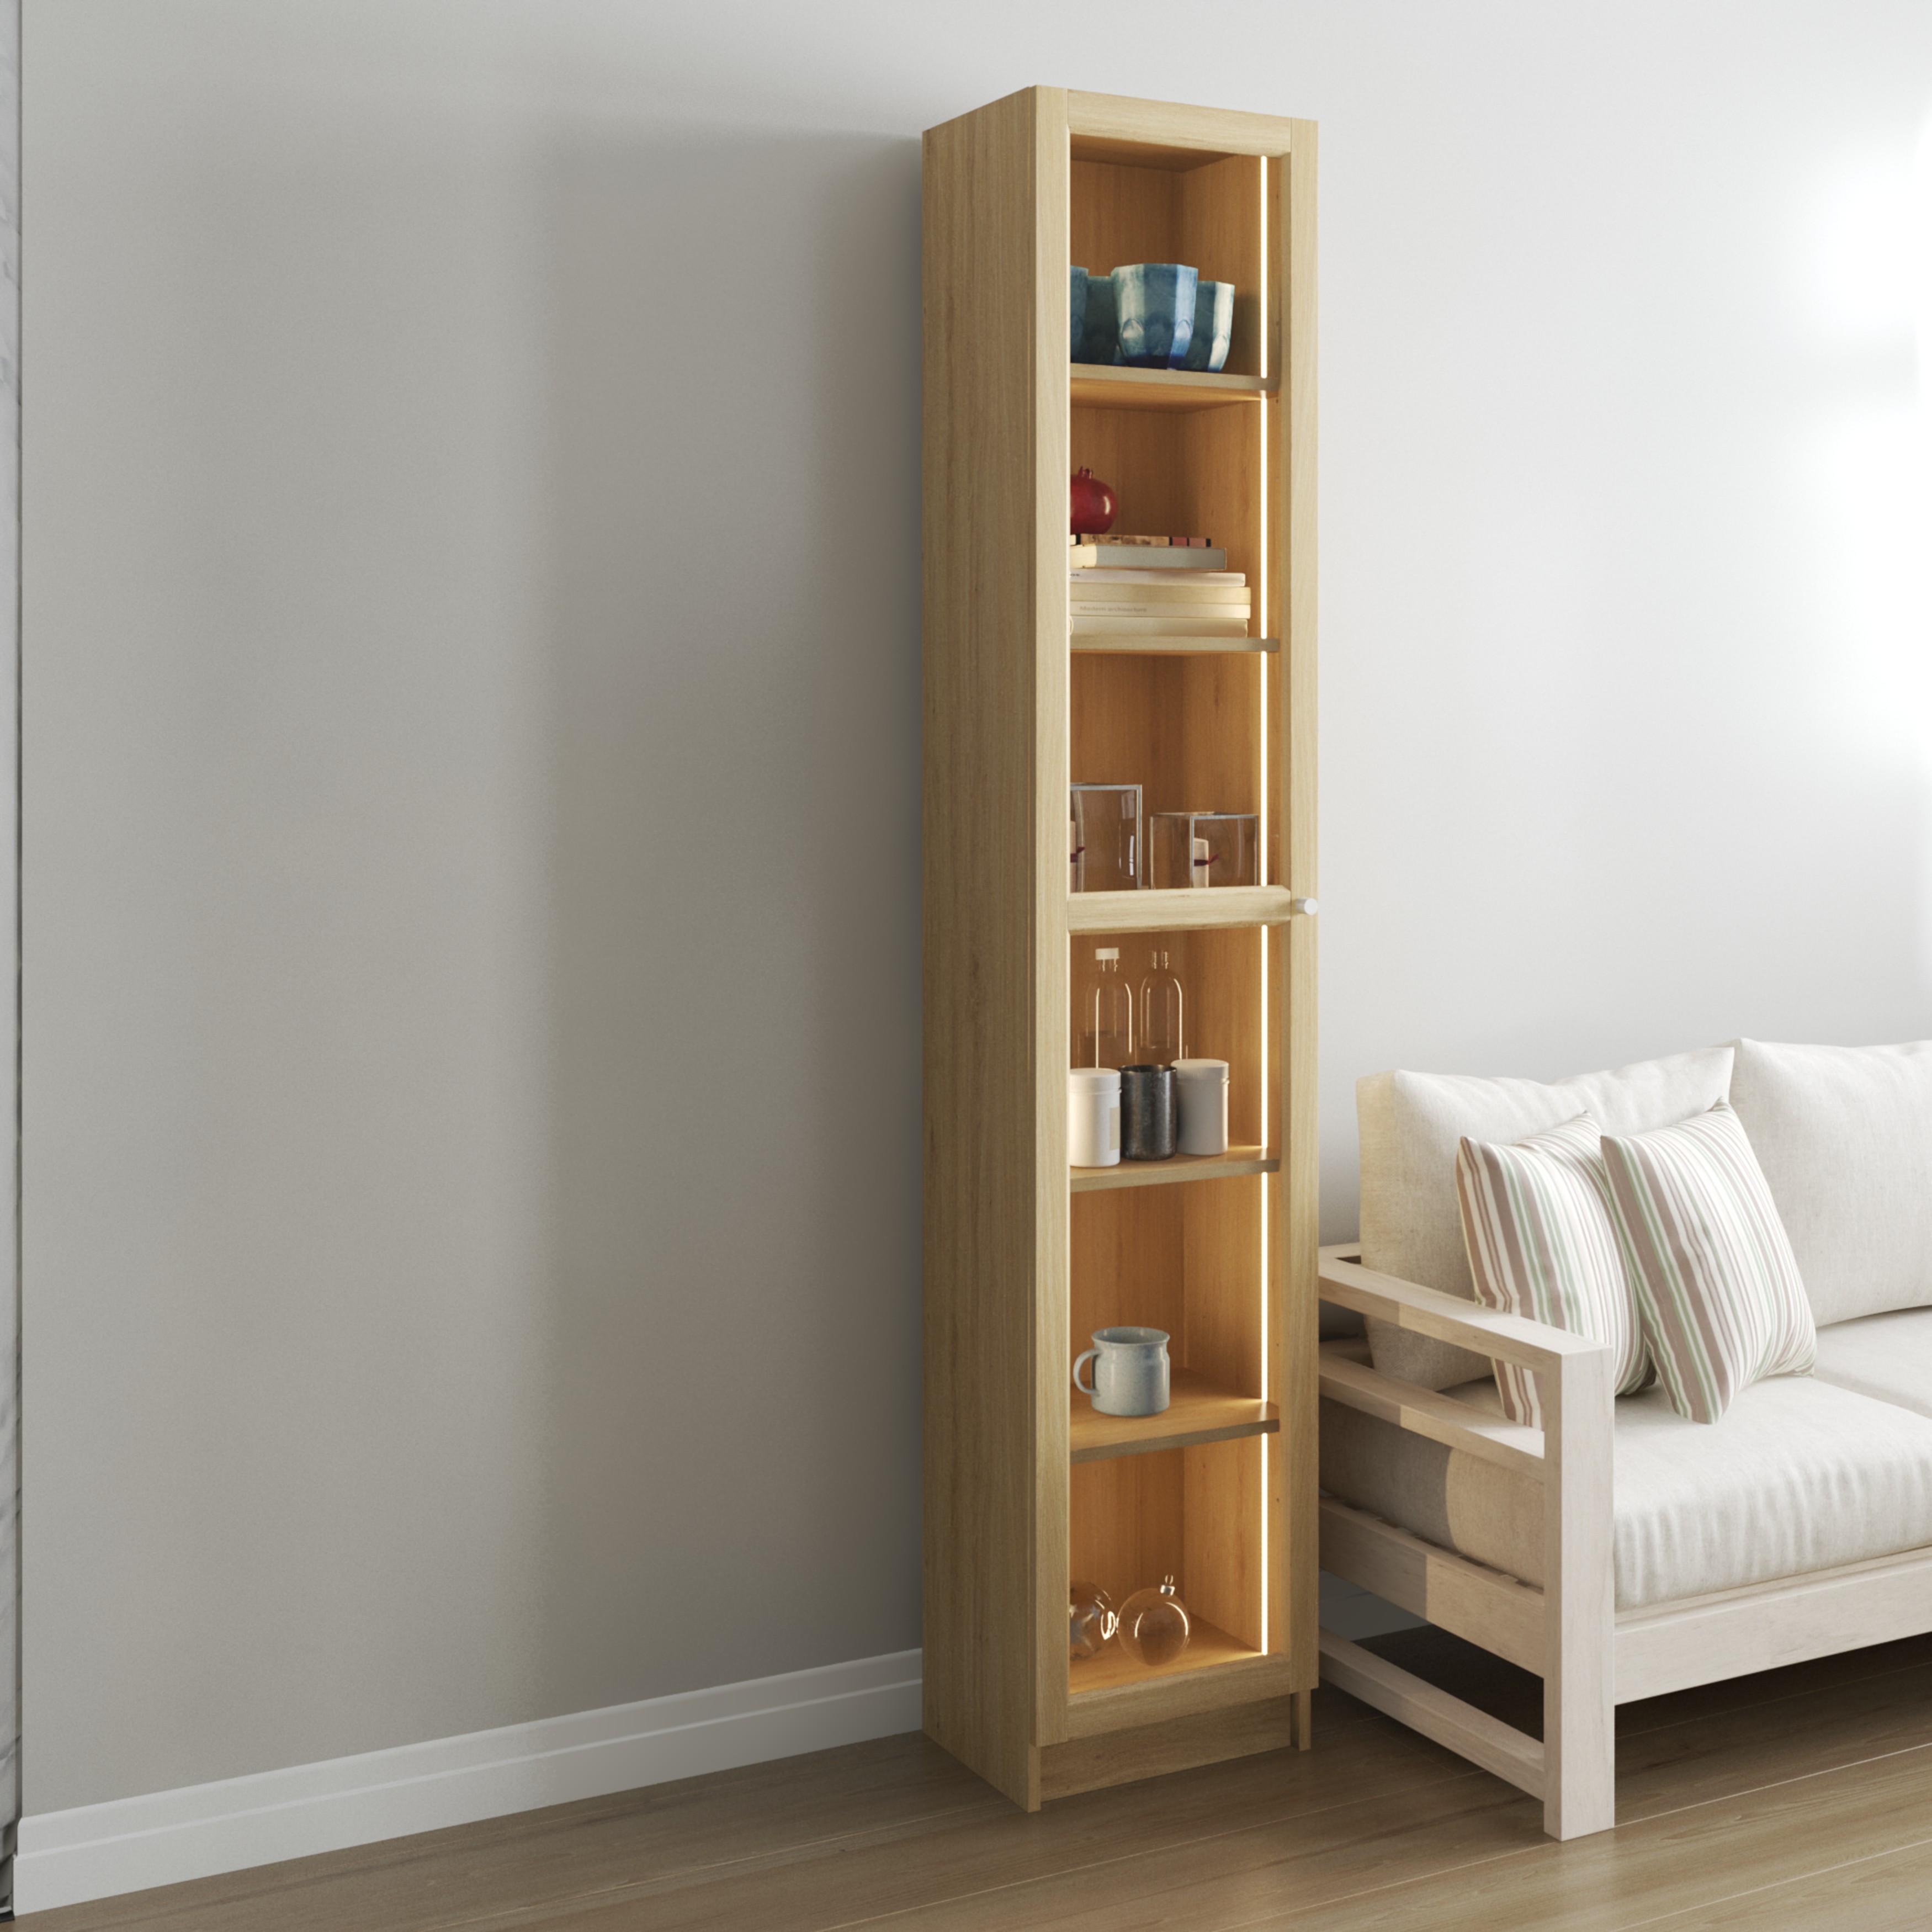 [Happy Home Furniture] CATY, kệ sách 6 tầng cửa kính size nhỏ tích hợp đèn LED, 40cm x 30cm x 202cm (DxRxC), KSA_011_LED